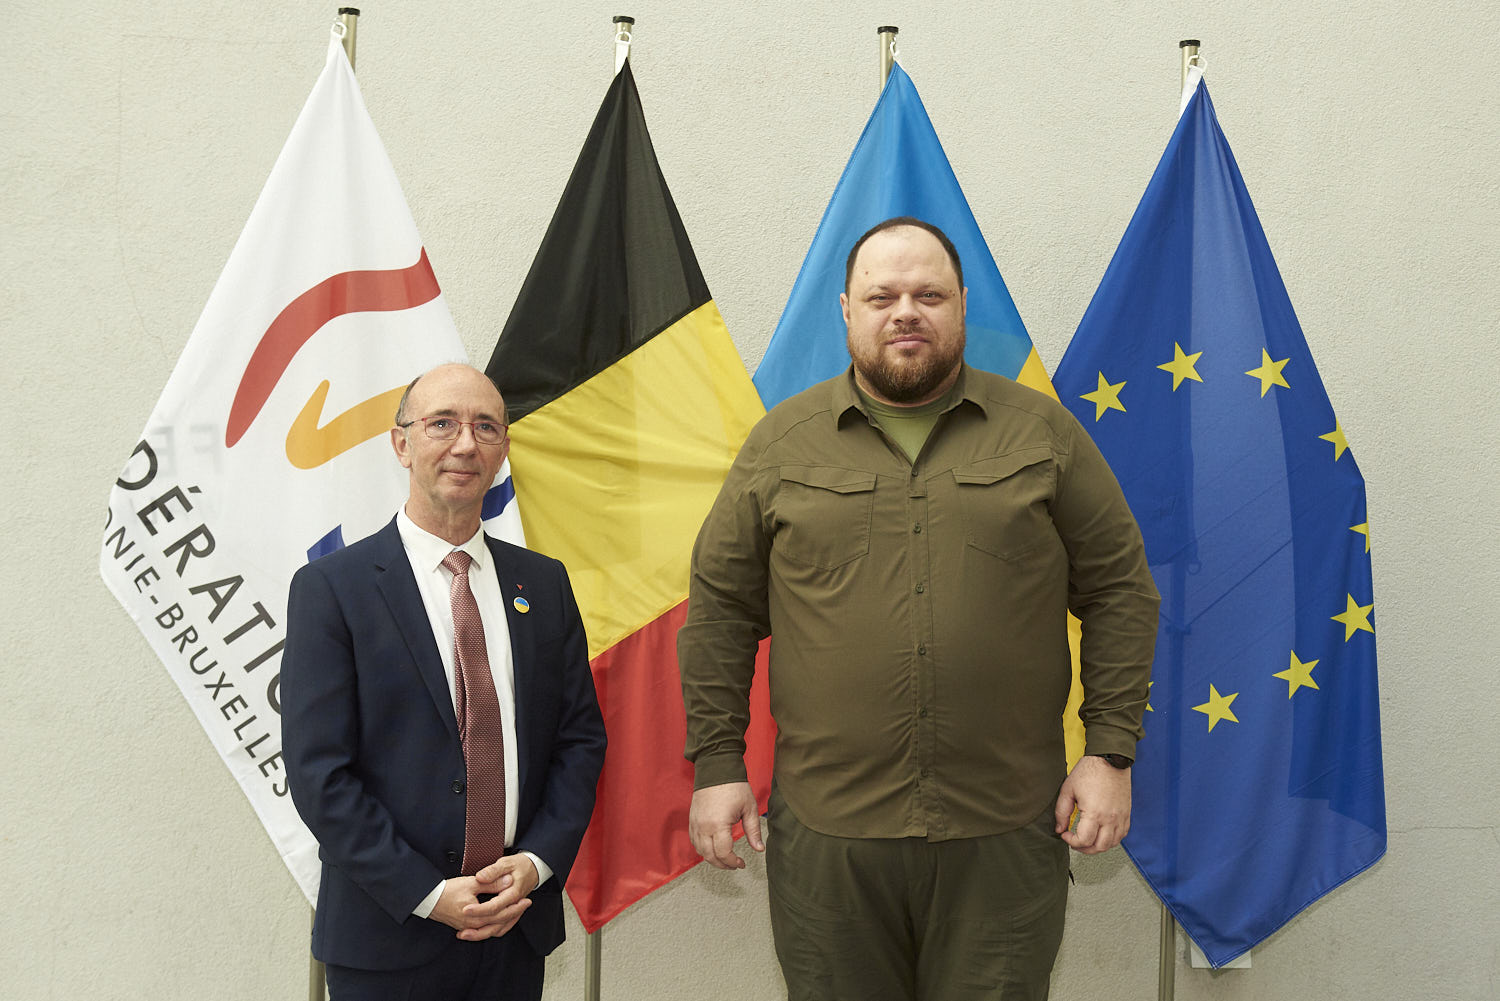 Le Parlement de la Fédération Wallonie-Bruxelles a reçu ce lundi 13 juin une délégation ukrainienne emmenée par #RuslanStefanchuk, Président de la Verkhovna Rada (le Parlement ukrainien).